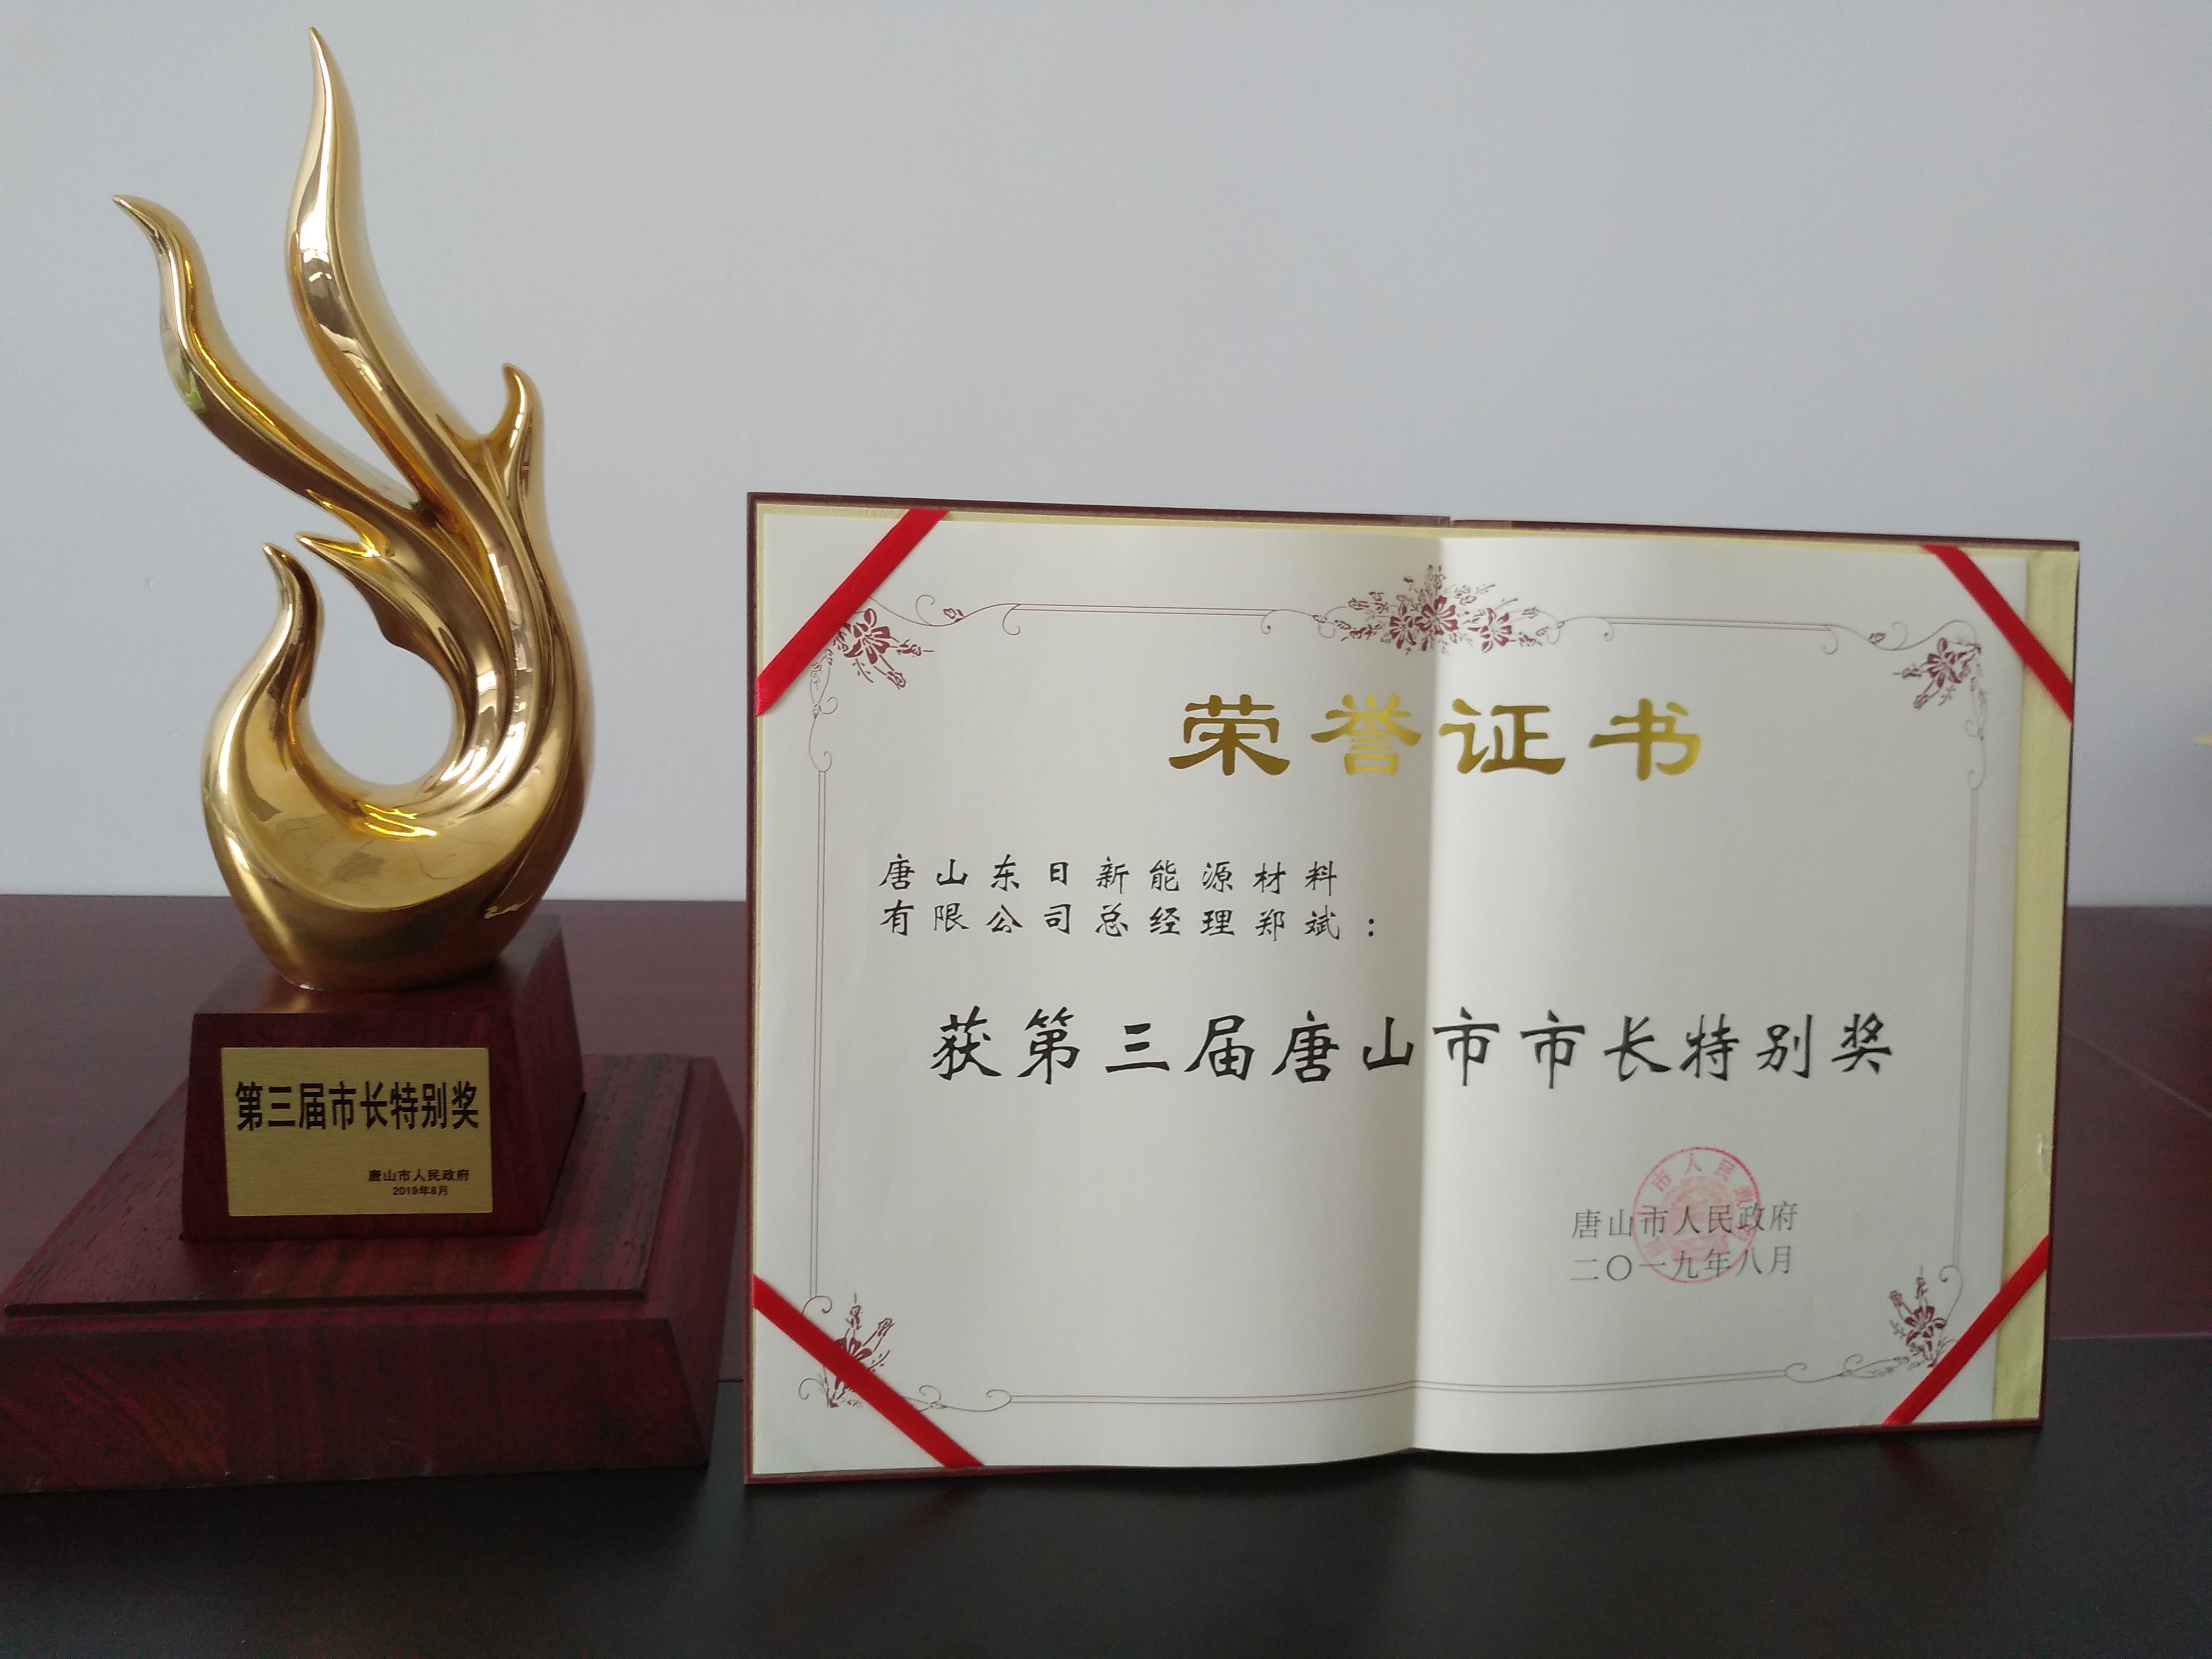 2019年8月21日唐山市第三届市长特别奖-奖杯证书